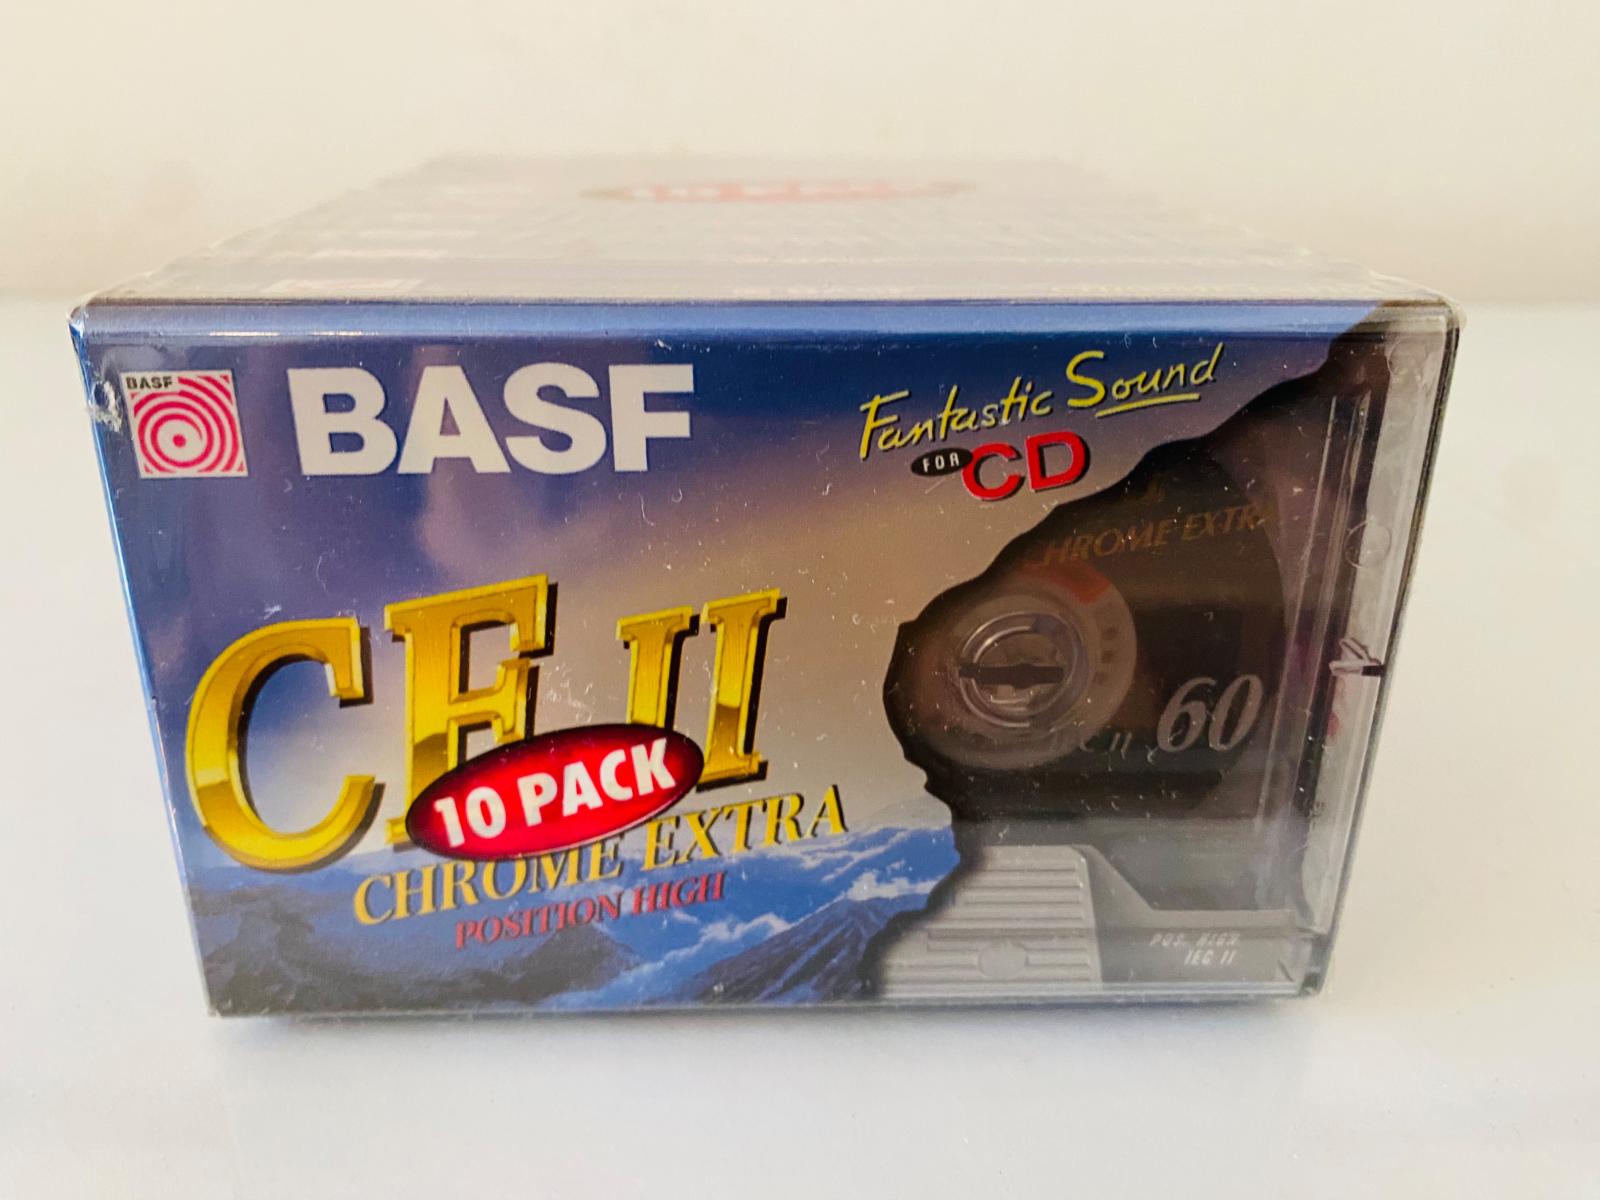 Audio / magnetofónové kazety / Basf CE II CHROME, 10 ks, nové, zabalené. - TV, audio, video